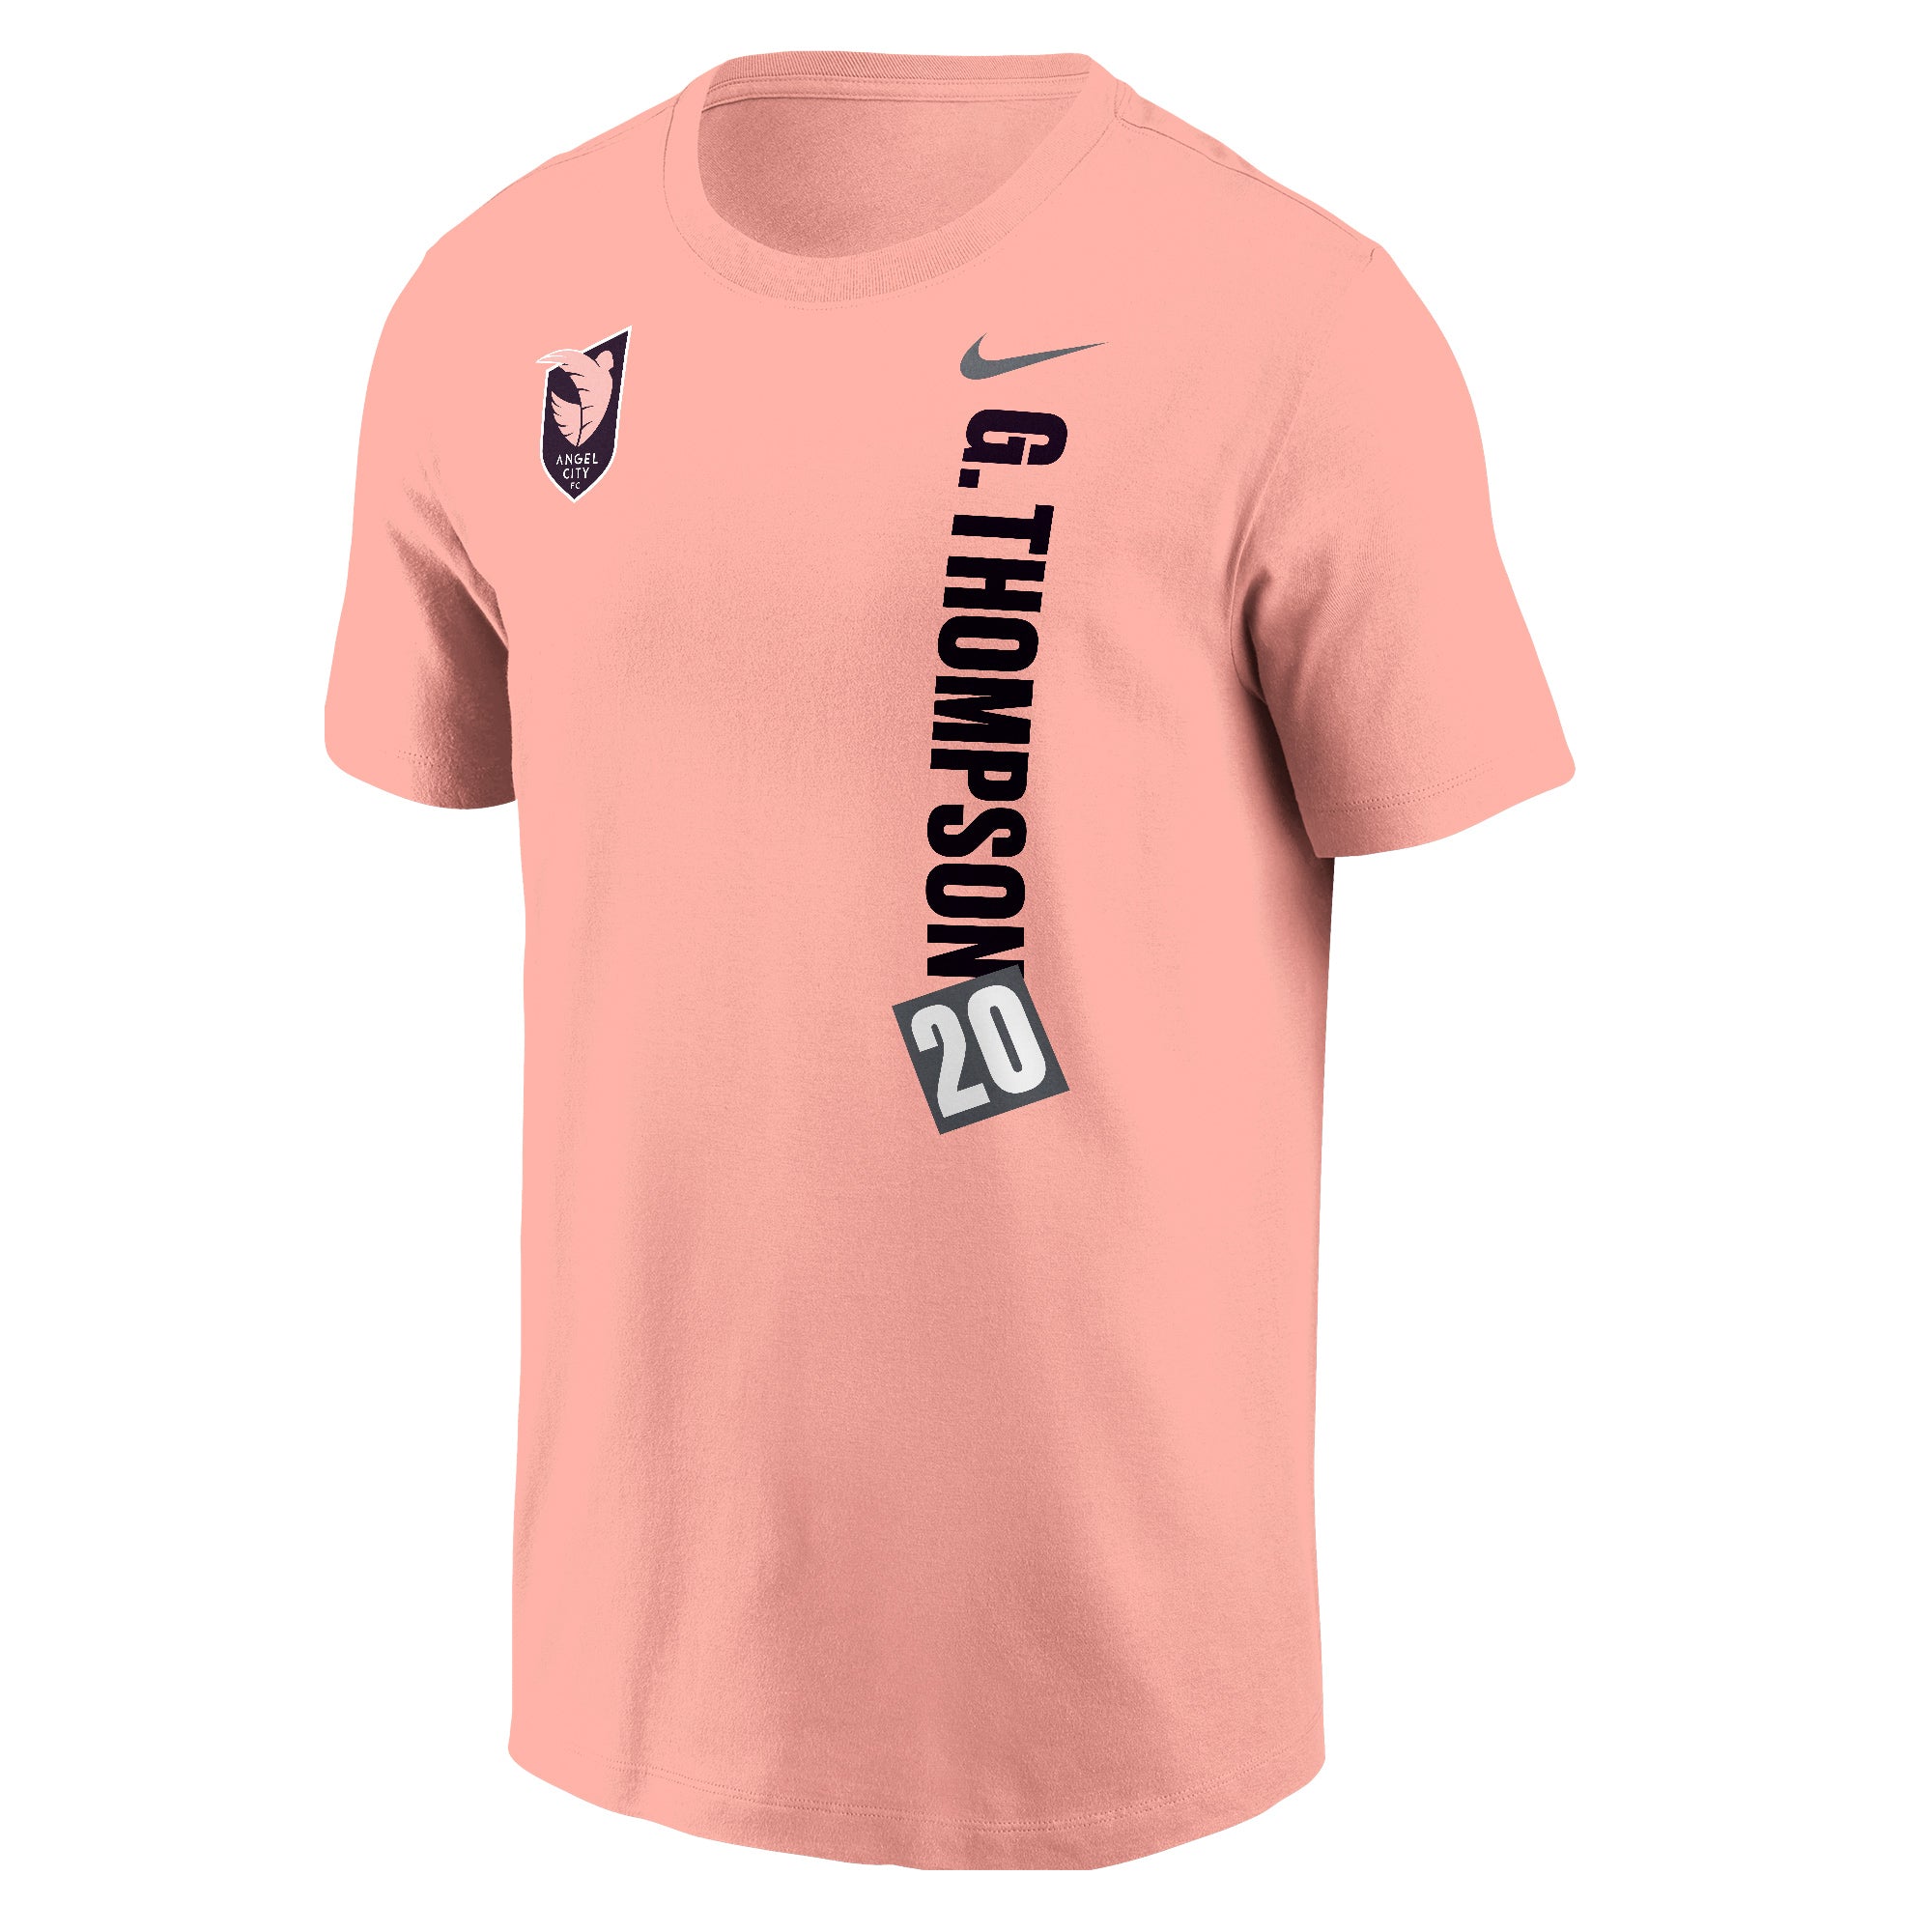 Angel City FC Nike Unisex Gisele Thompson Name and Number Sol Rosa Short Sleeve T-Shirt